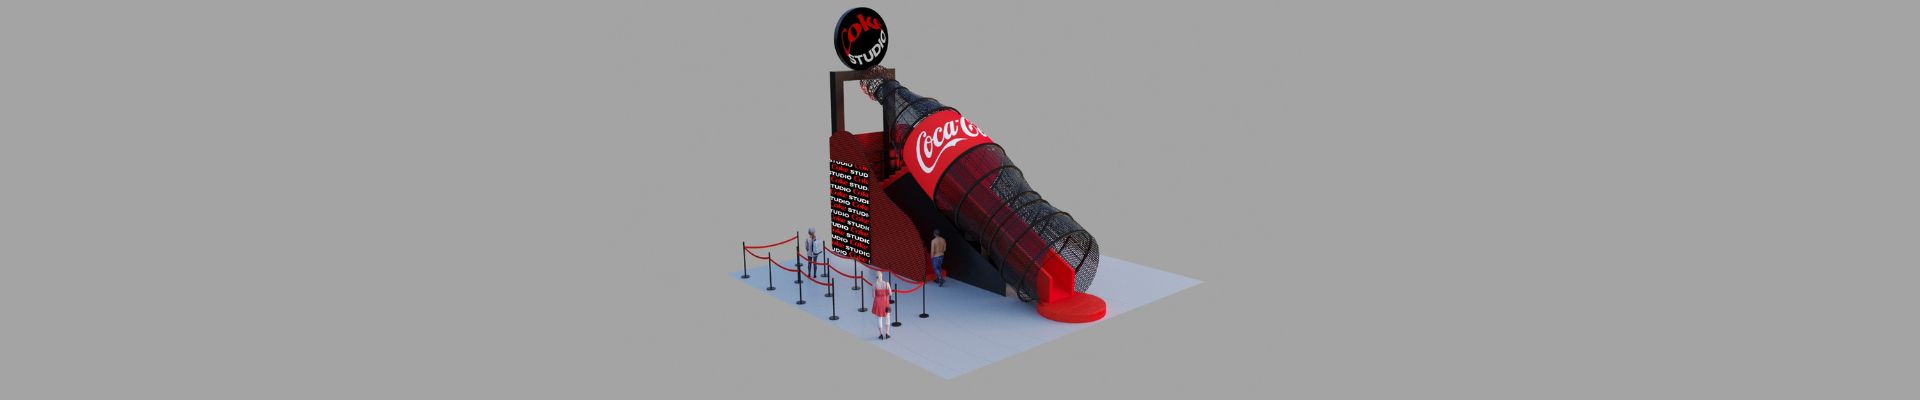 Coca-Cola leva iniciativas sustentáveis e interativas à Festival